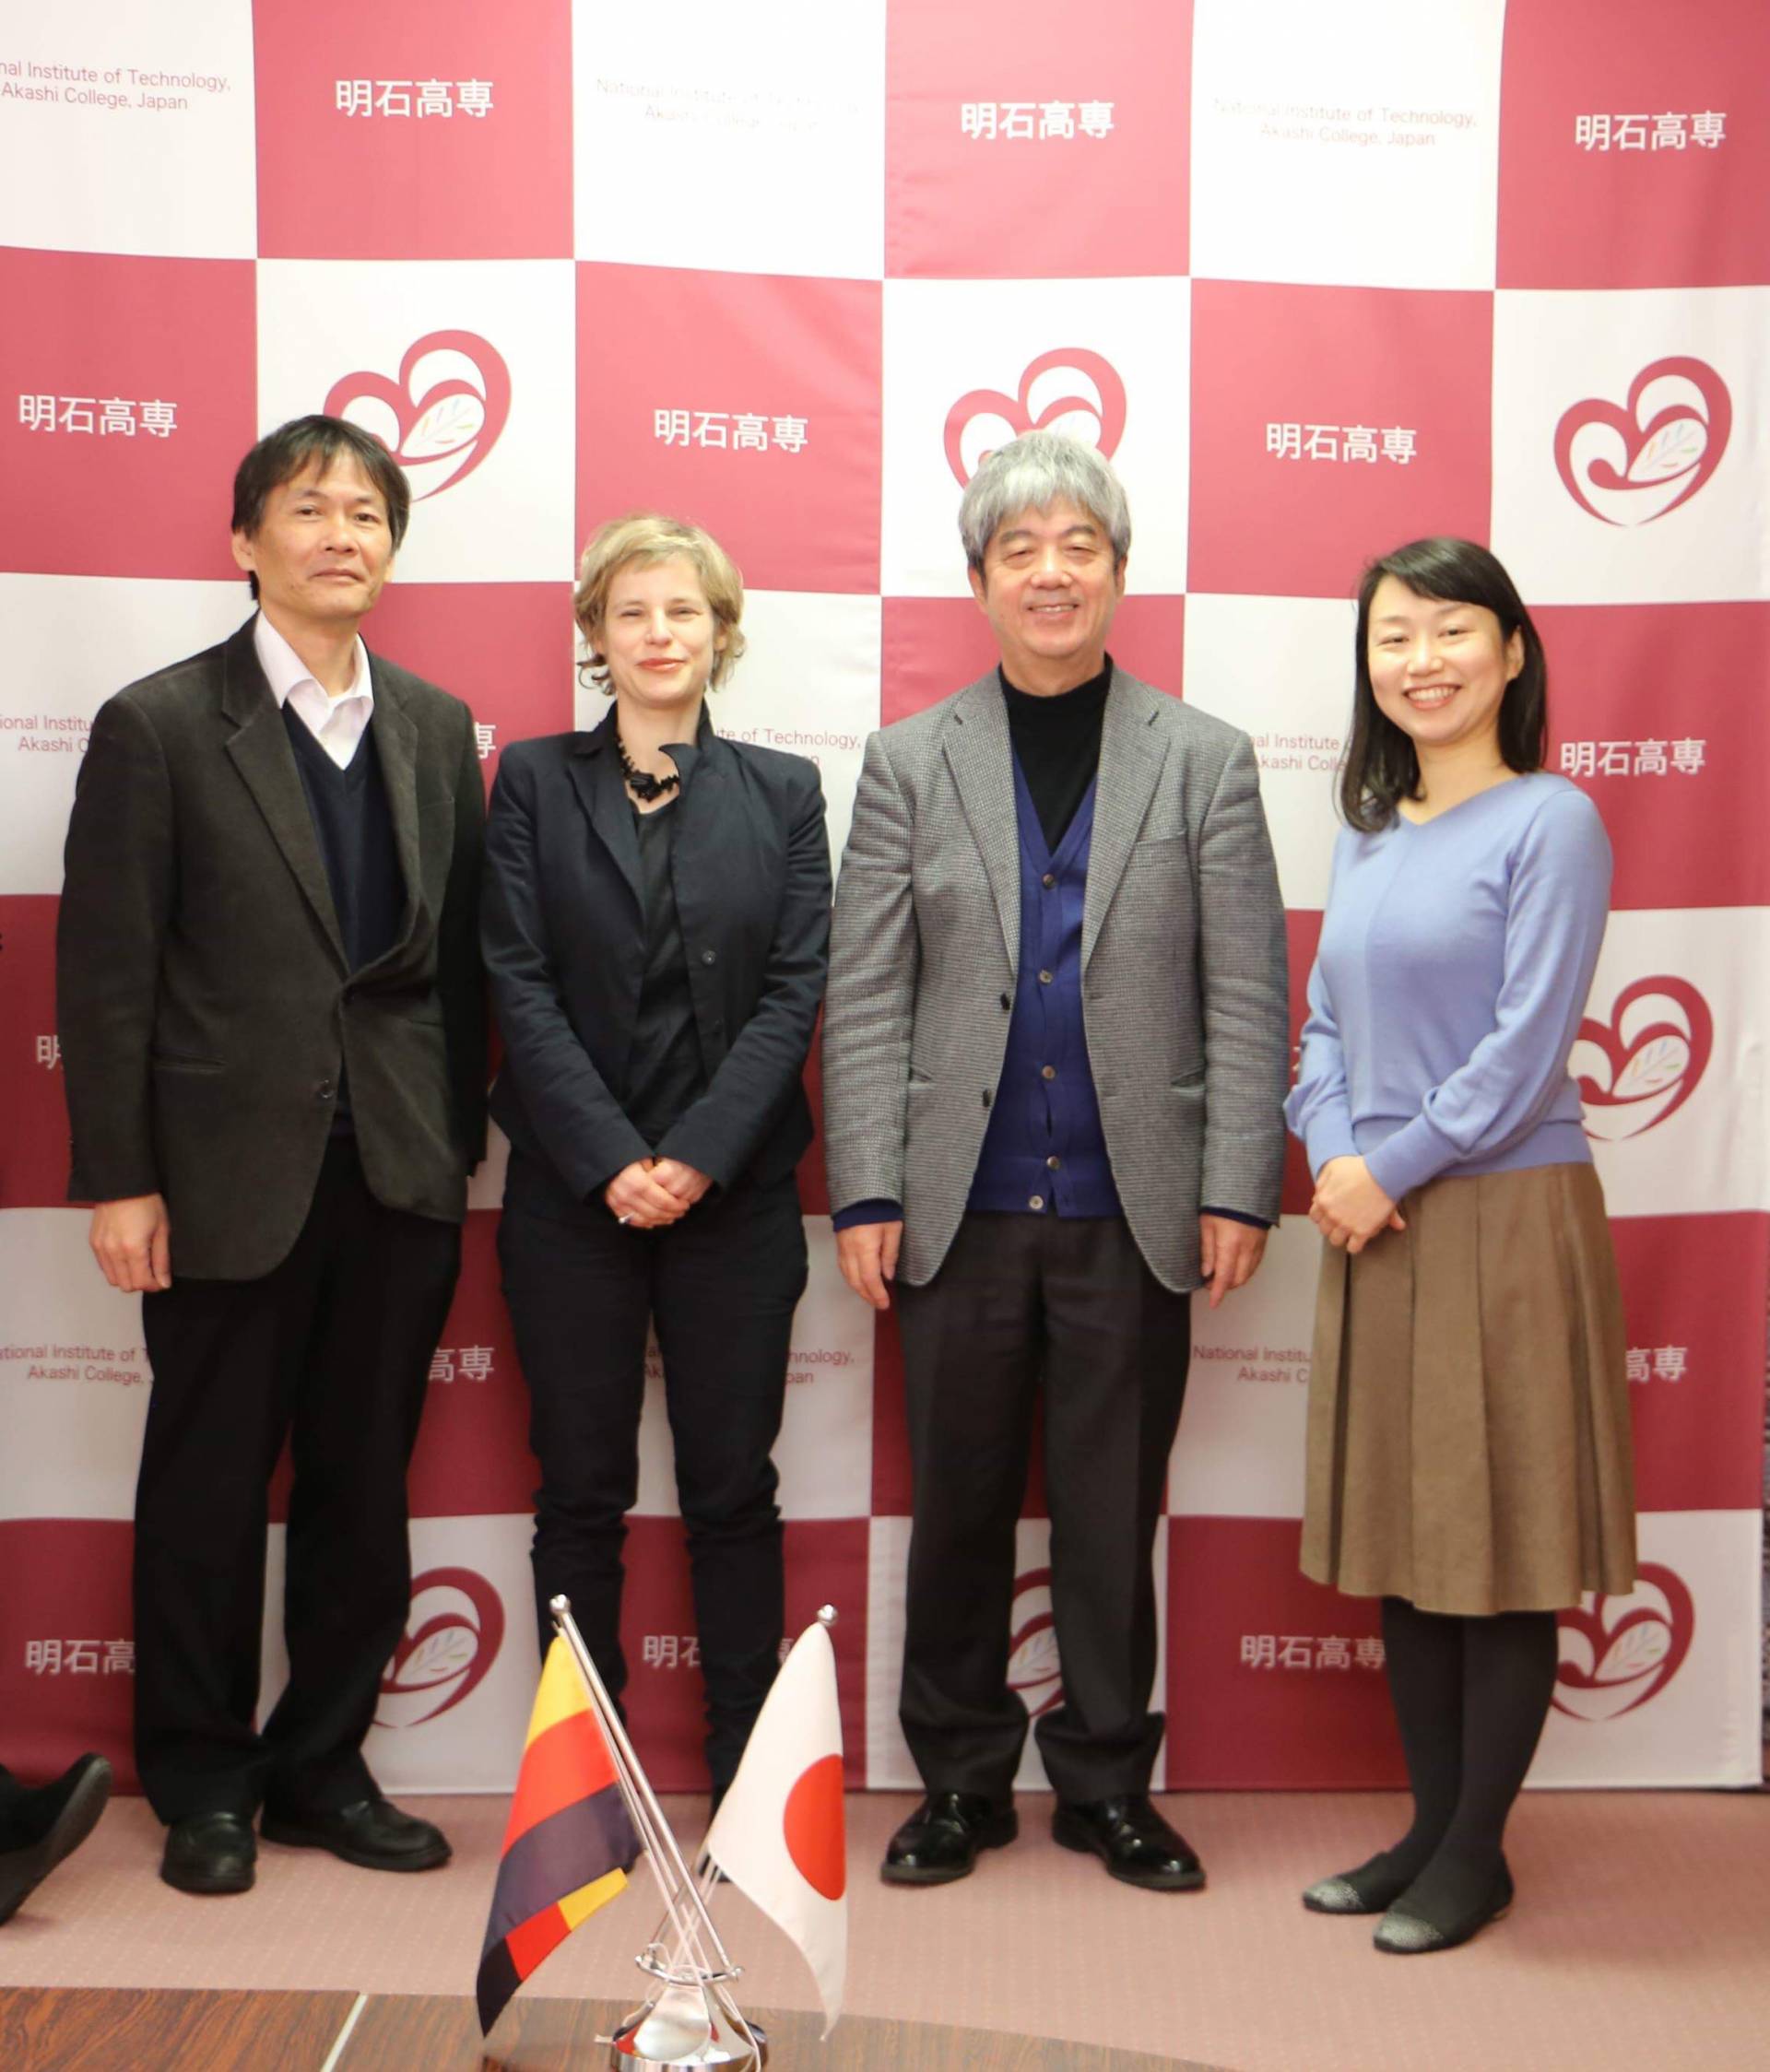 Prof. Seji Fujiwara, Prof. Katinka Temme, Präsident Hideaki Kasai, Prof. Naho Takeda